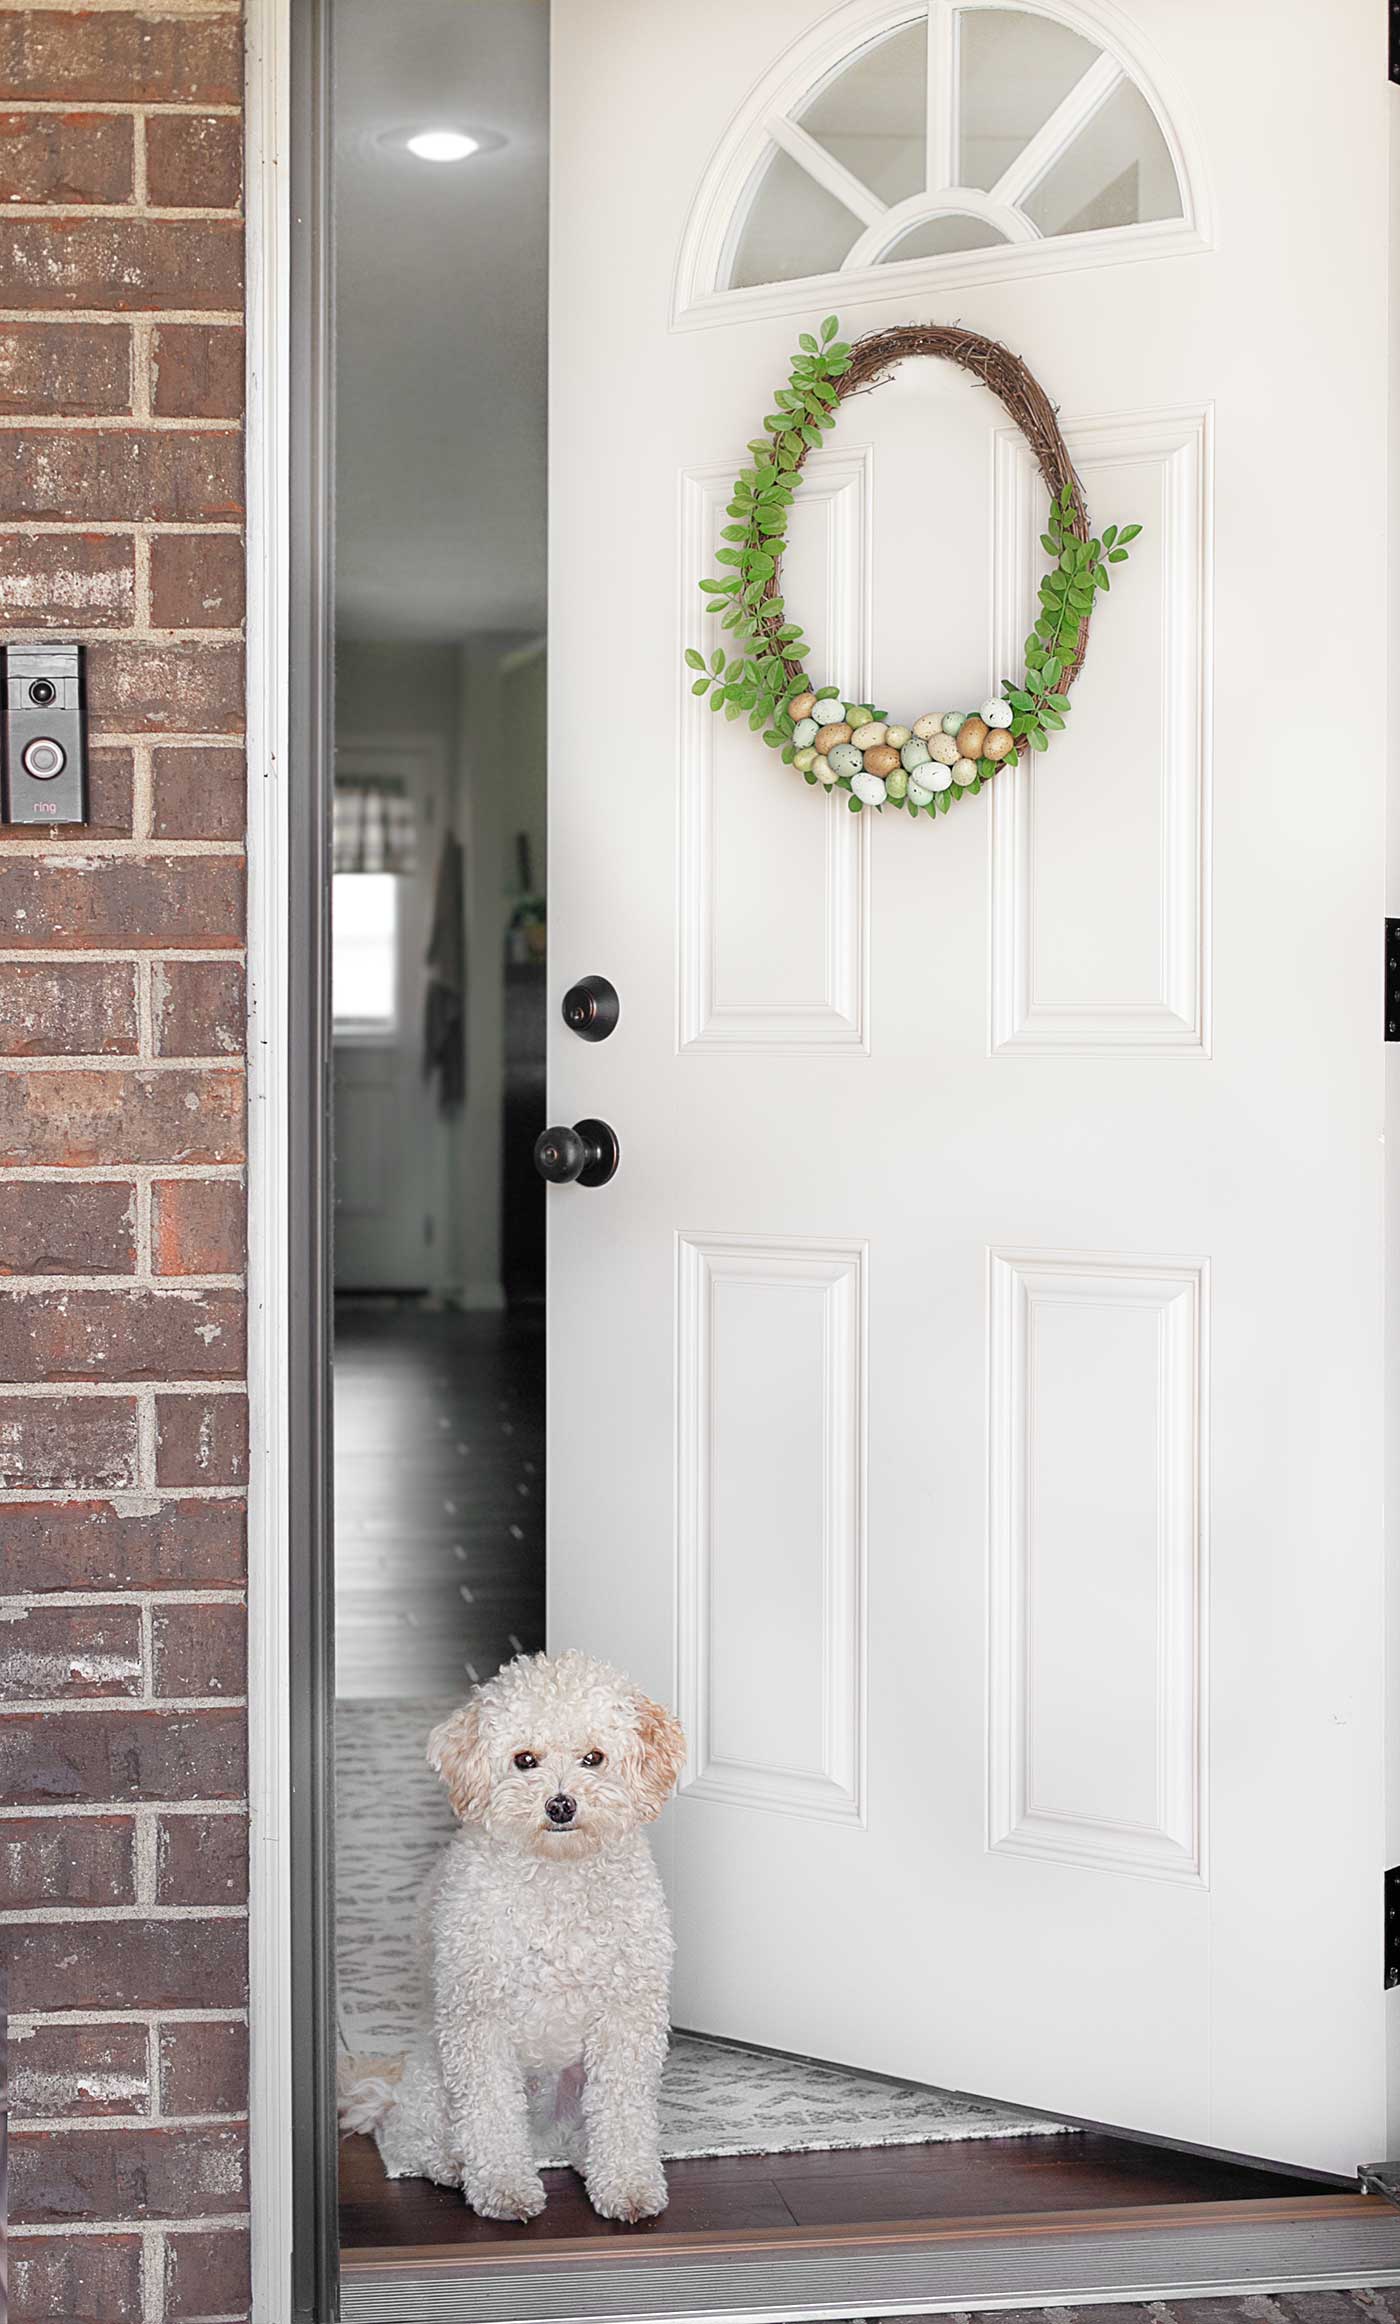 sweet dog in doorway with a diy spring wreath on the front door